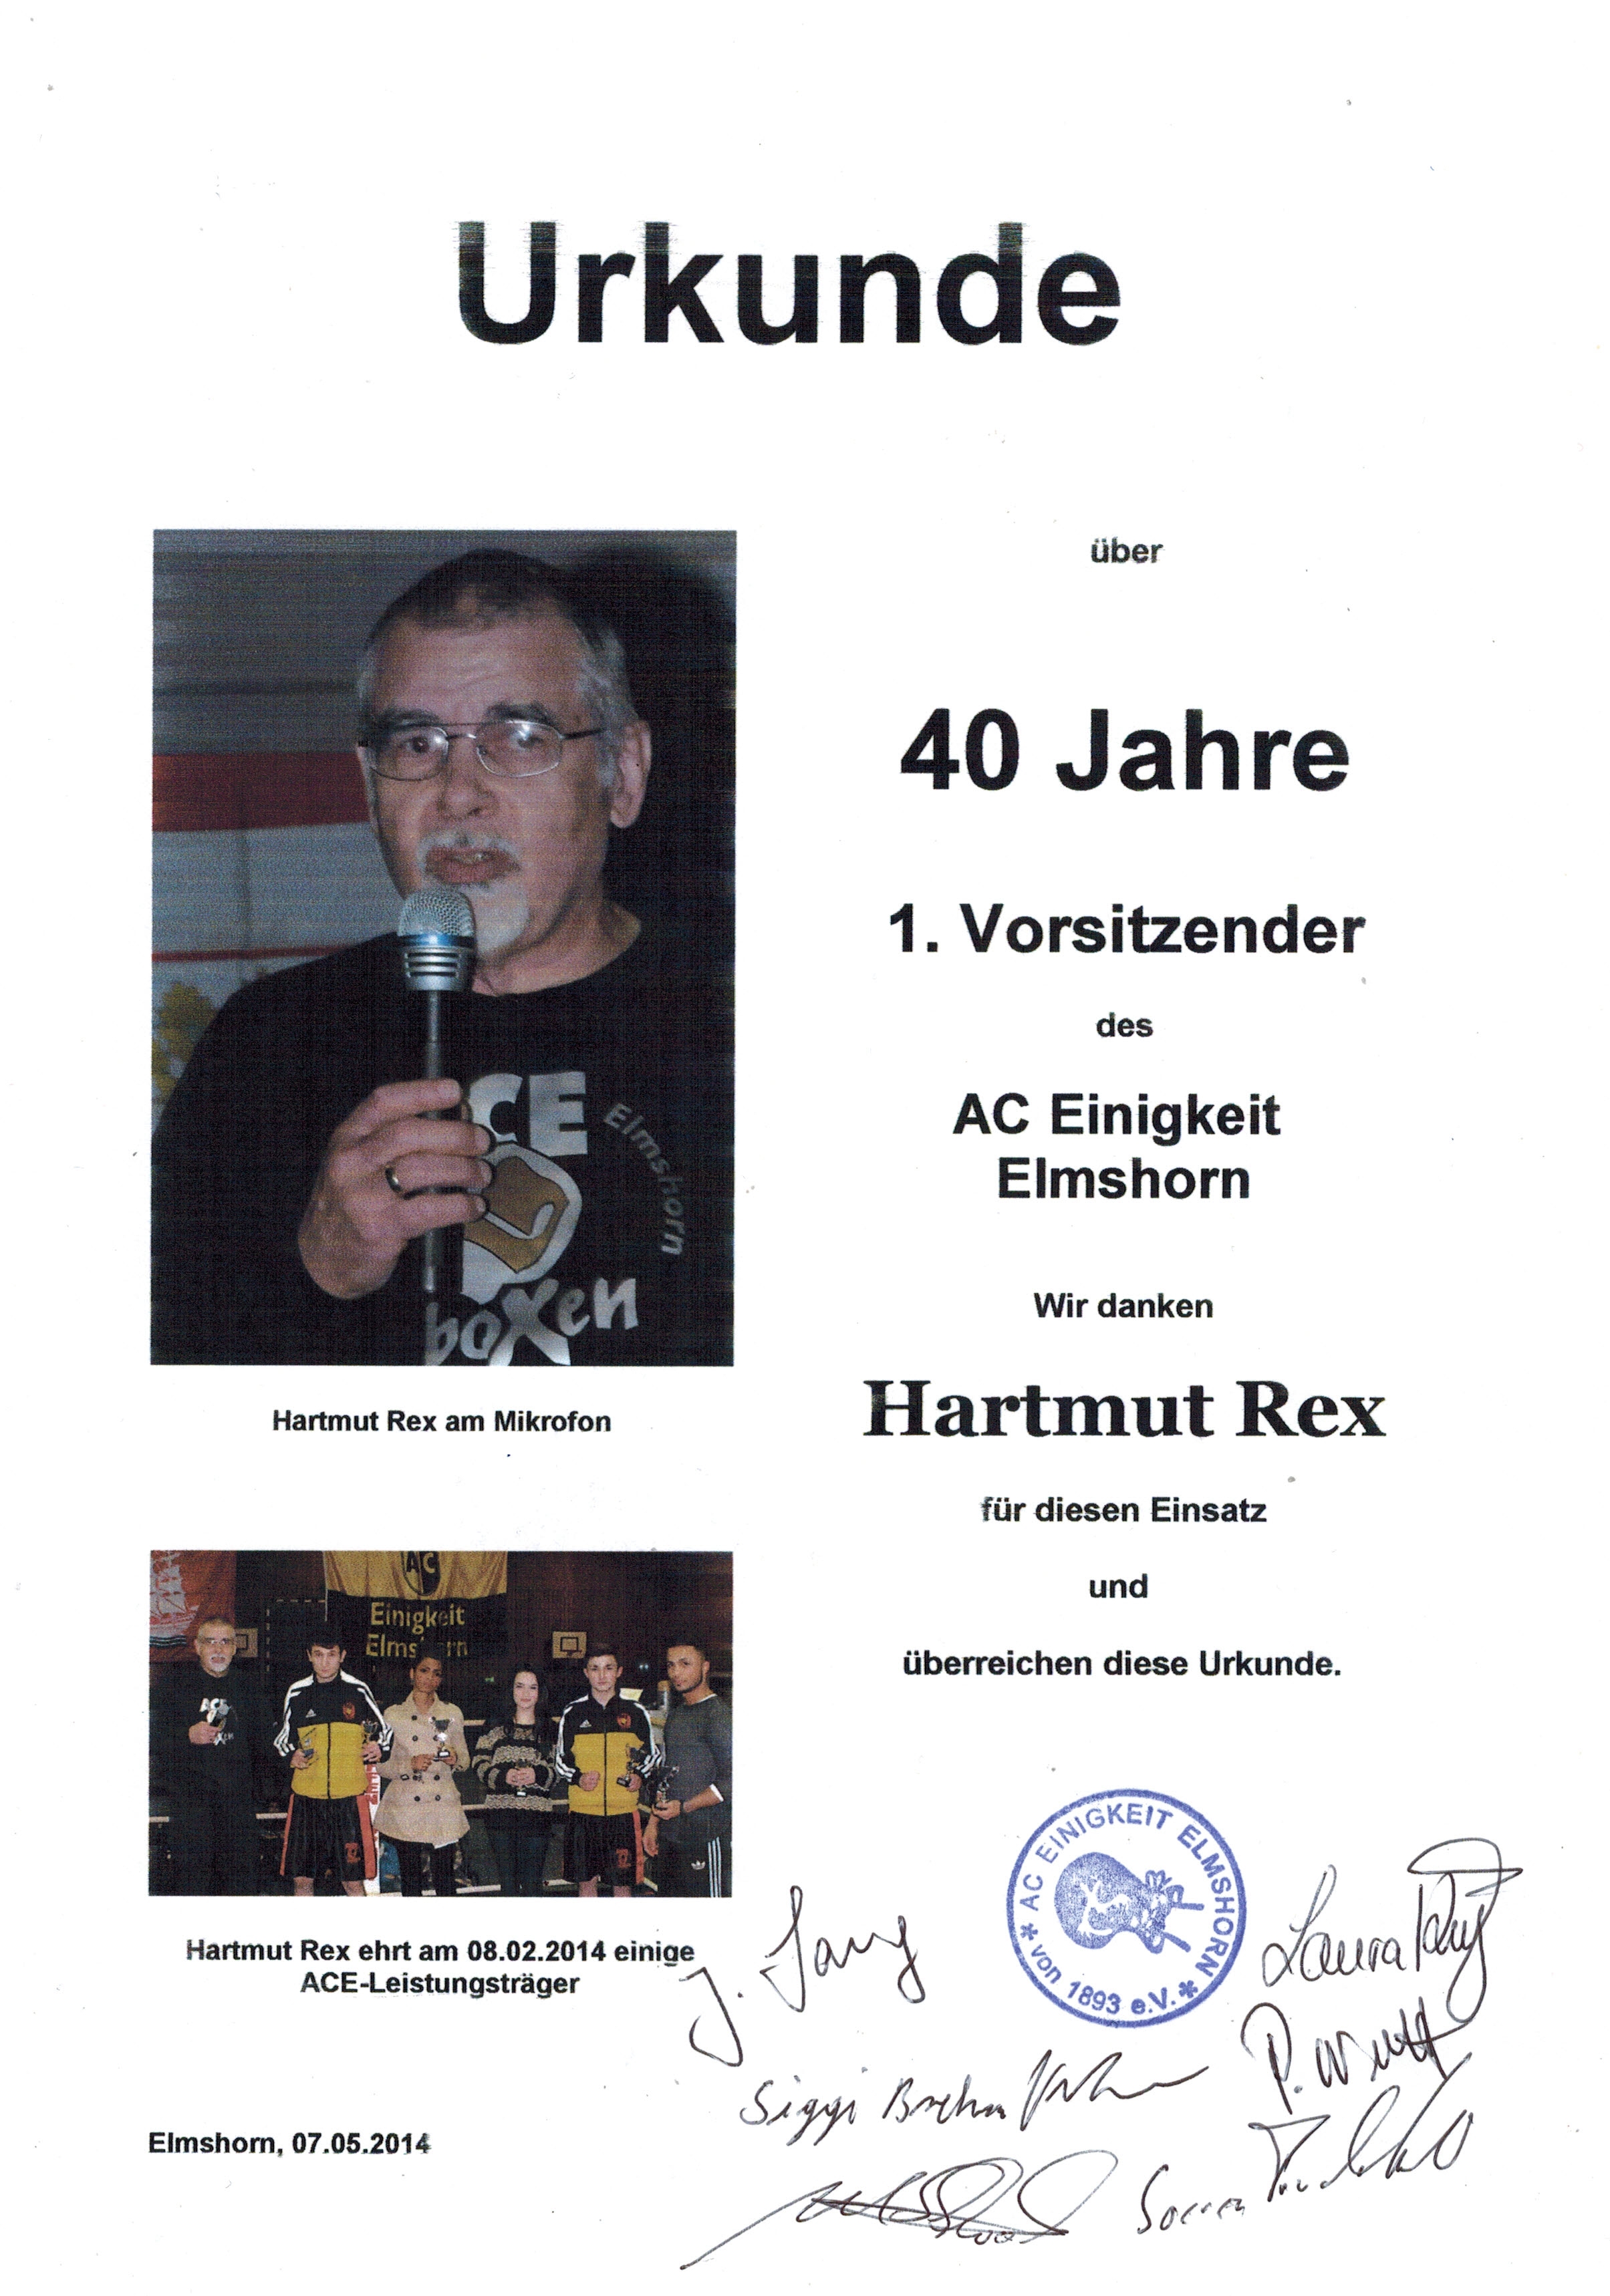 Hartmut Rex - Urkunde zu 40 Jahre 1. Vorsitzender